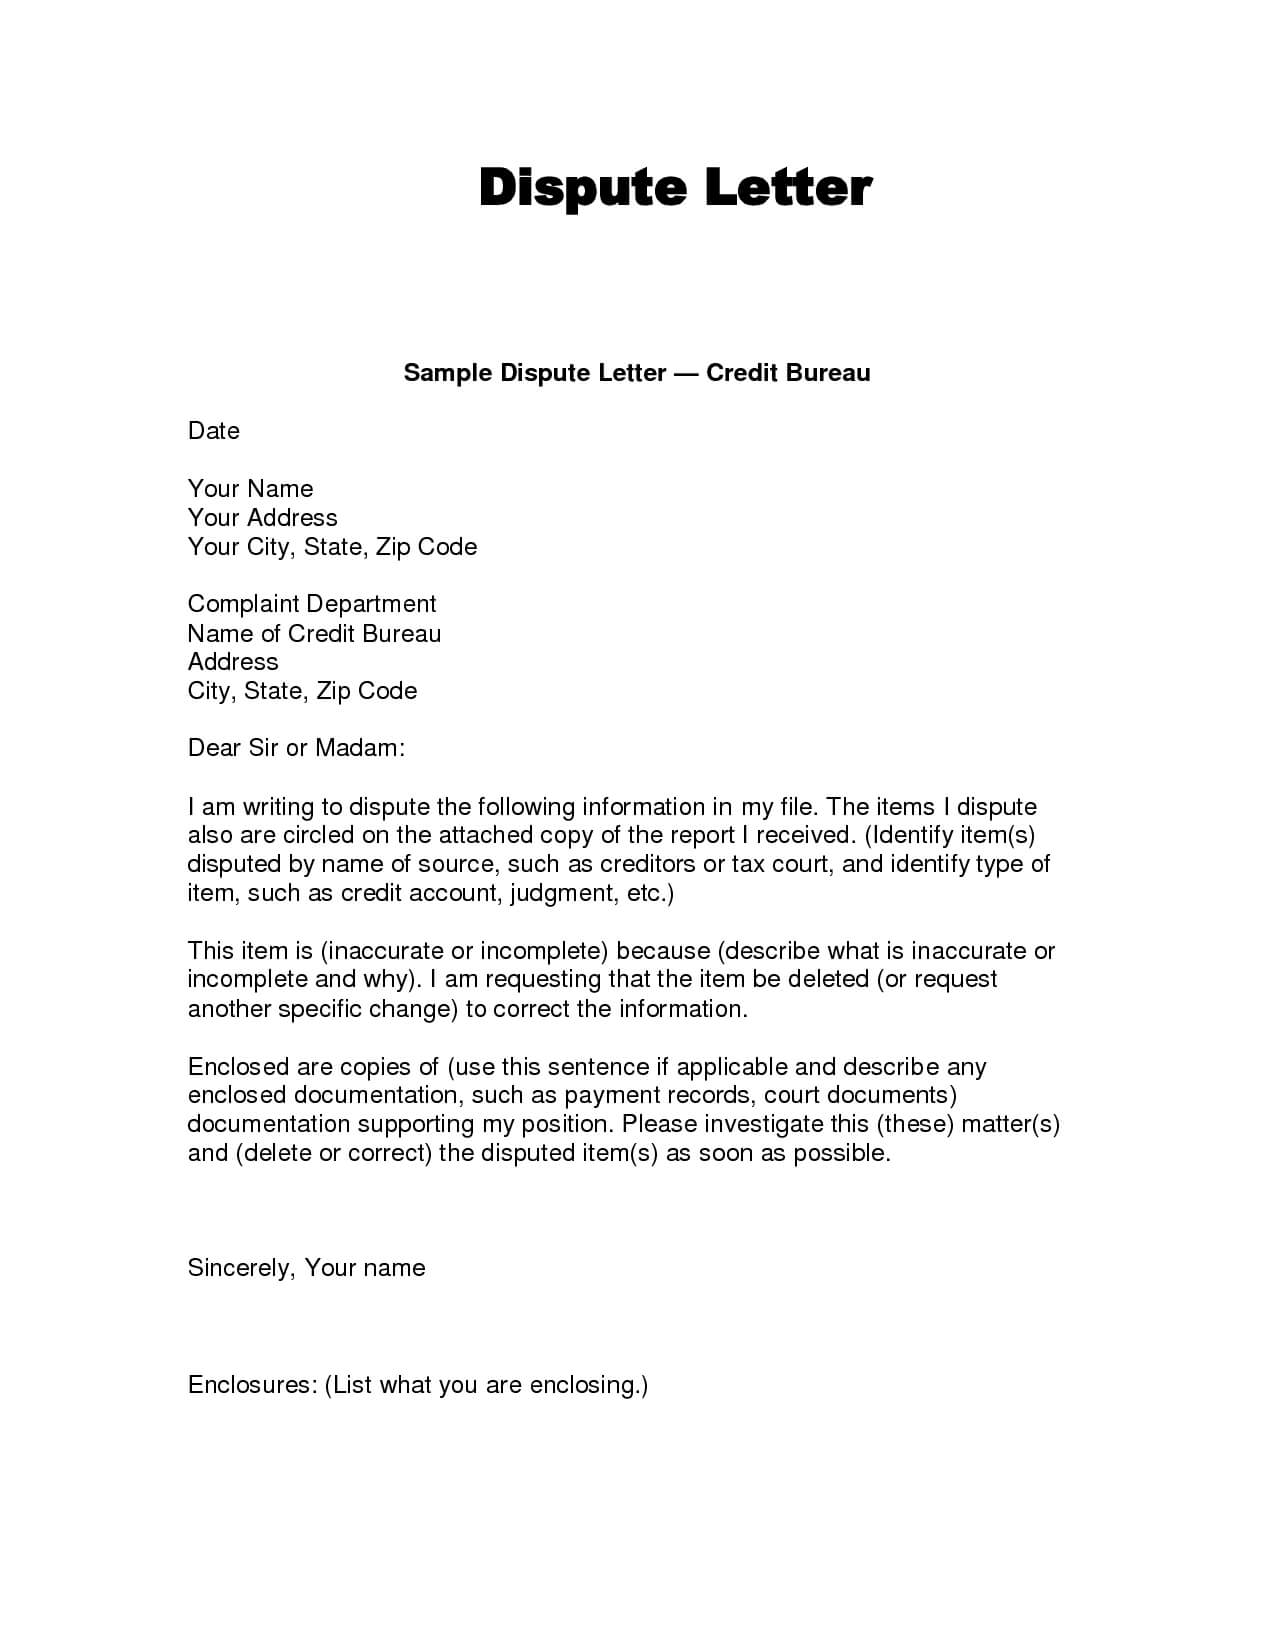 Writing Dispute Letter Format | Credit Bureaus, Lettering In Credit Report Dispute Letter Template